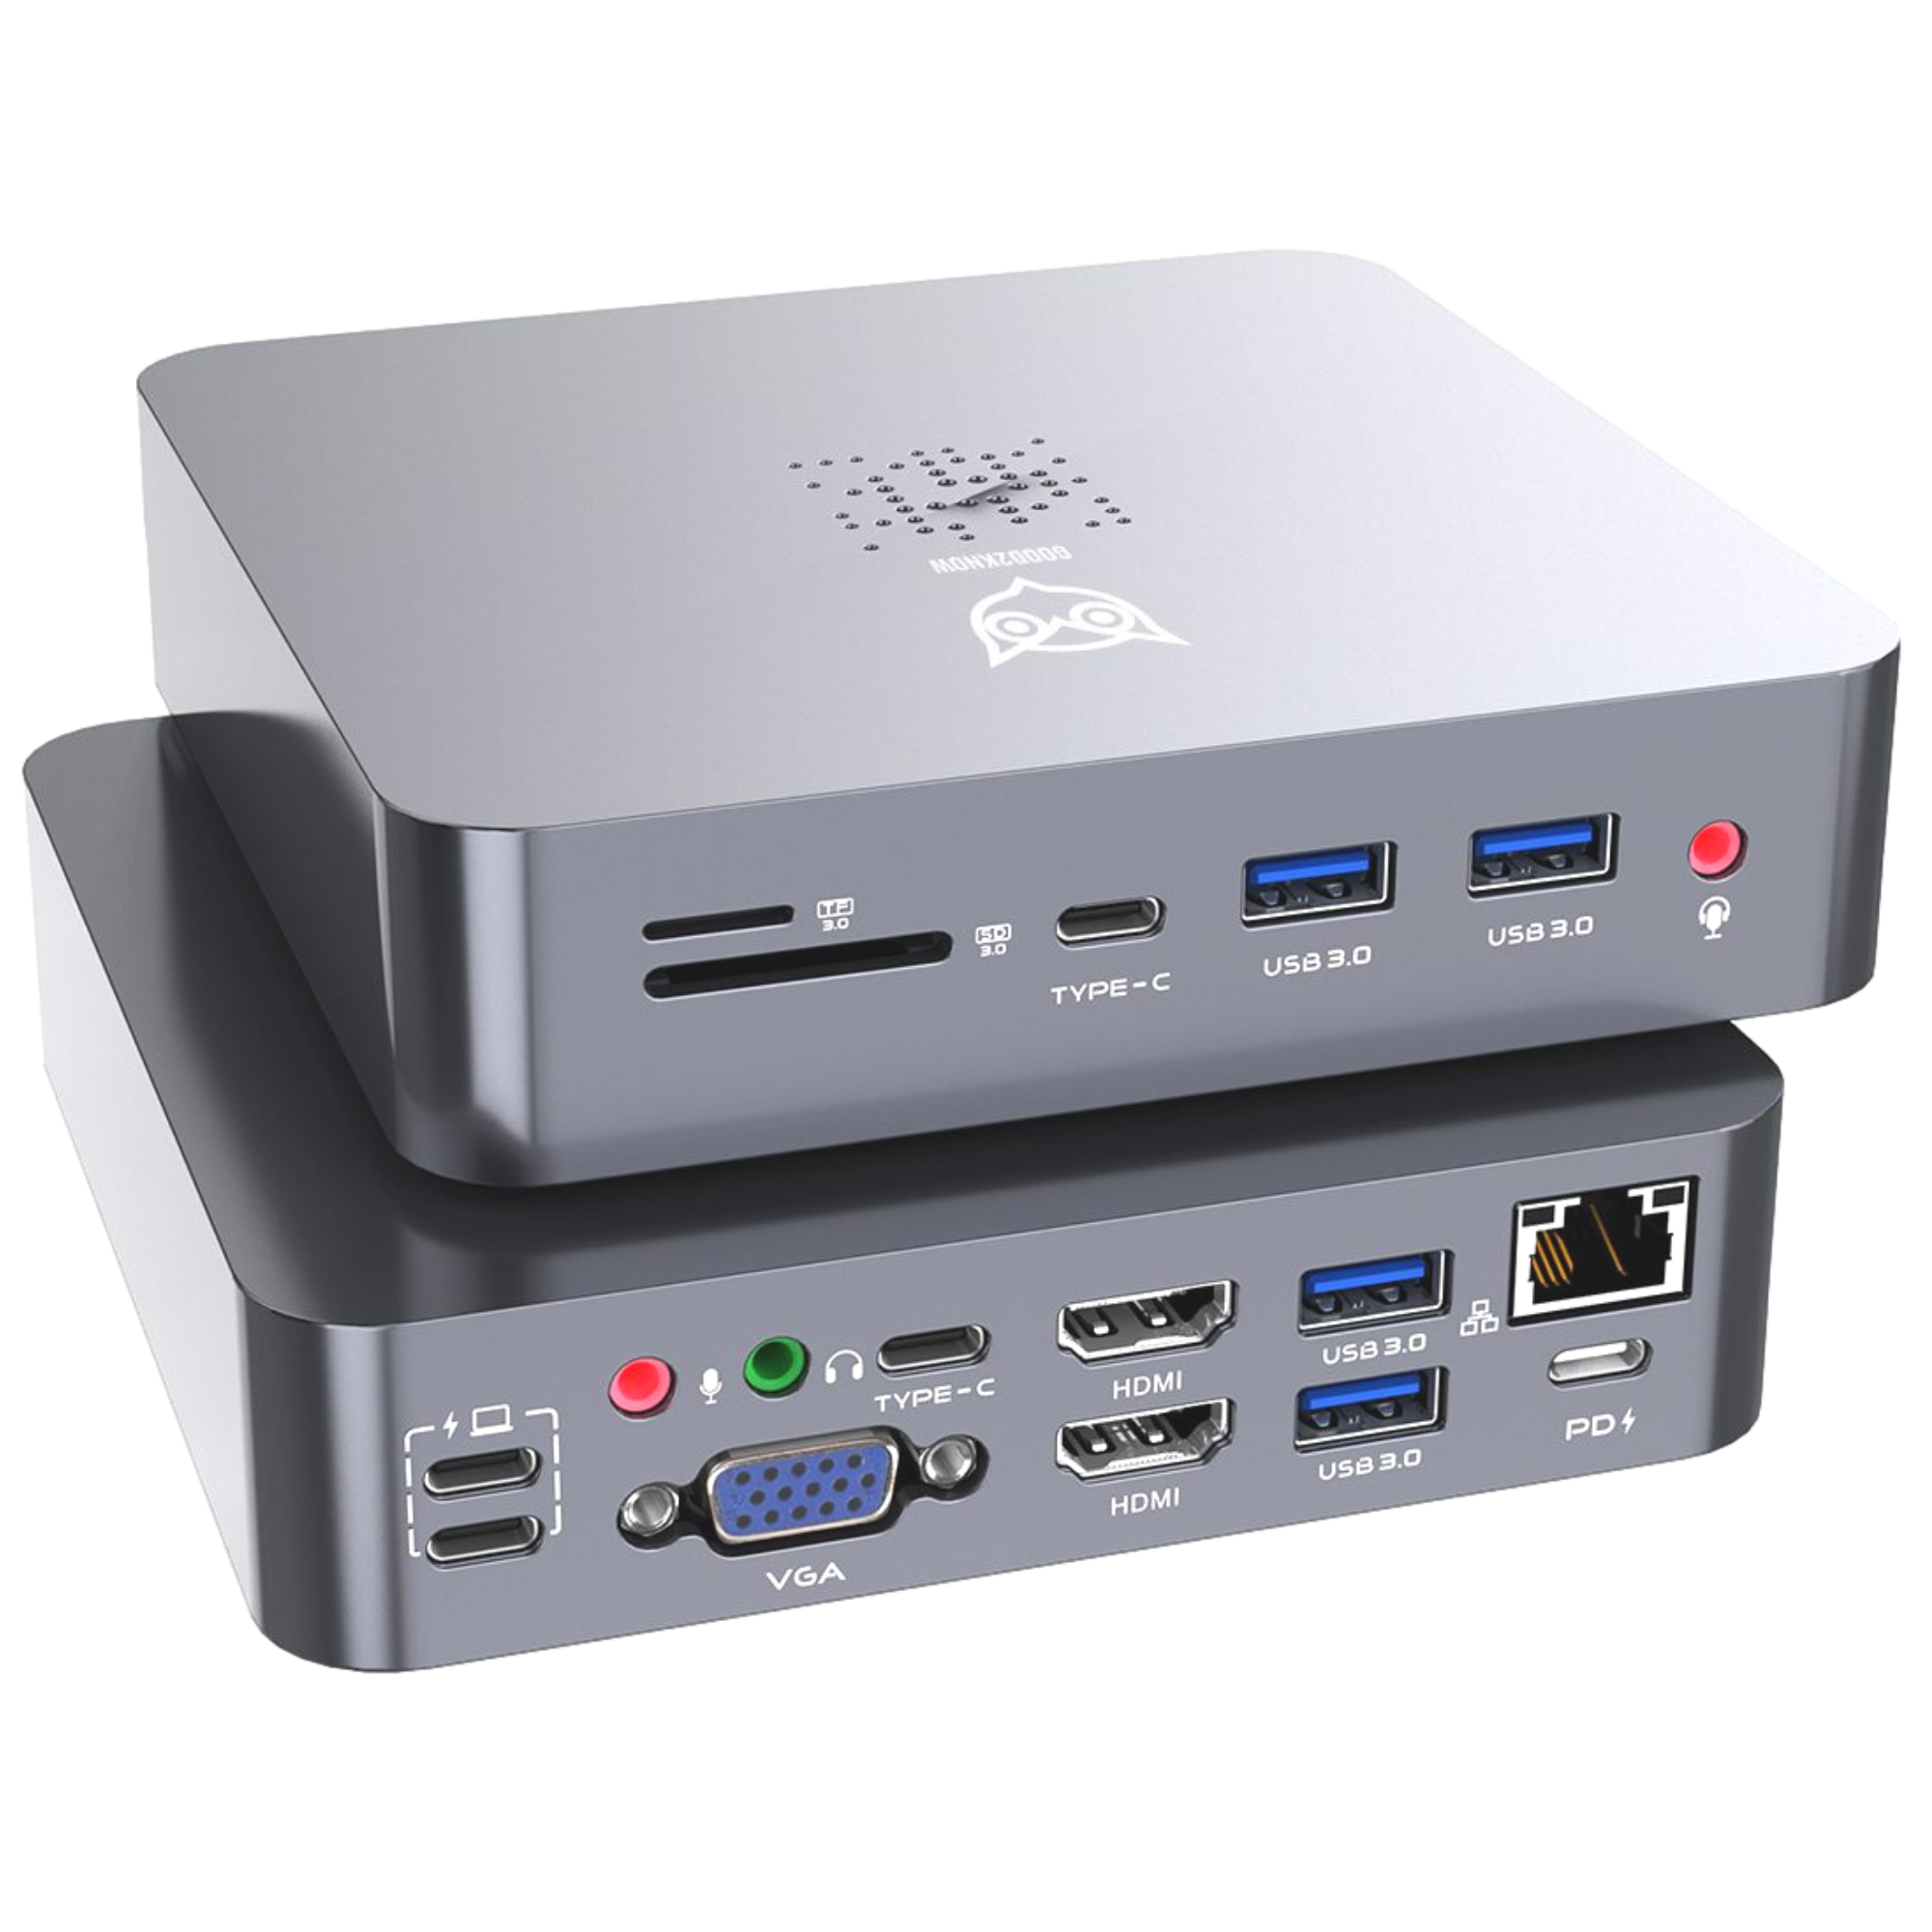 Macbook Hub Docking station 8 in 2 - 4k HDMI Usb Splitter Alleen Geschikt voor Macbook Air en Macbook Pro